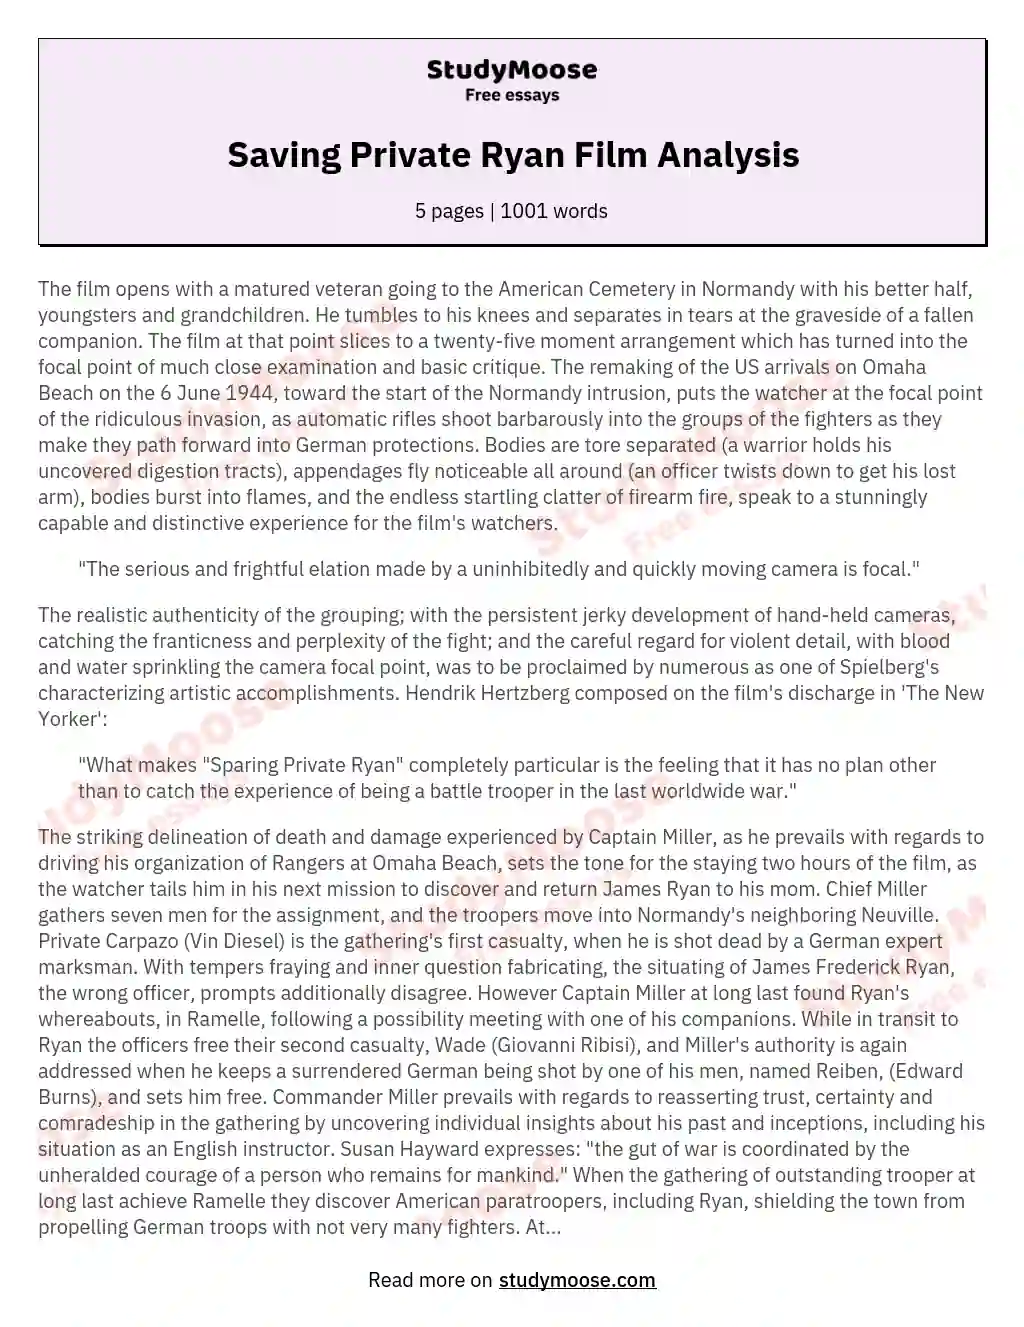 saving private ryan analysis essay